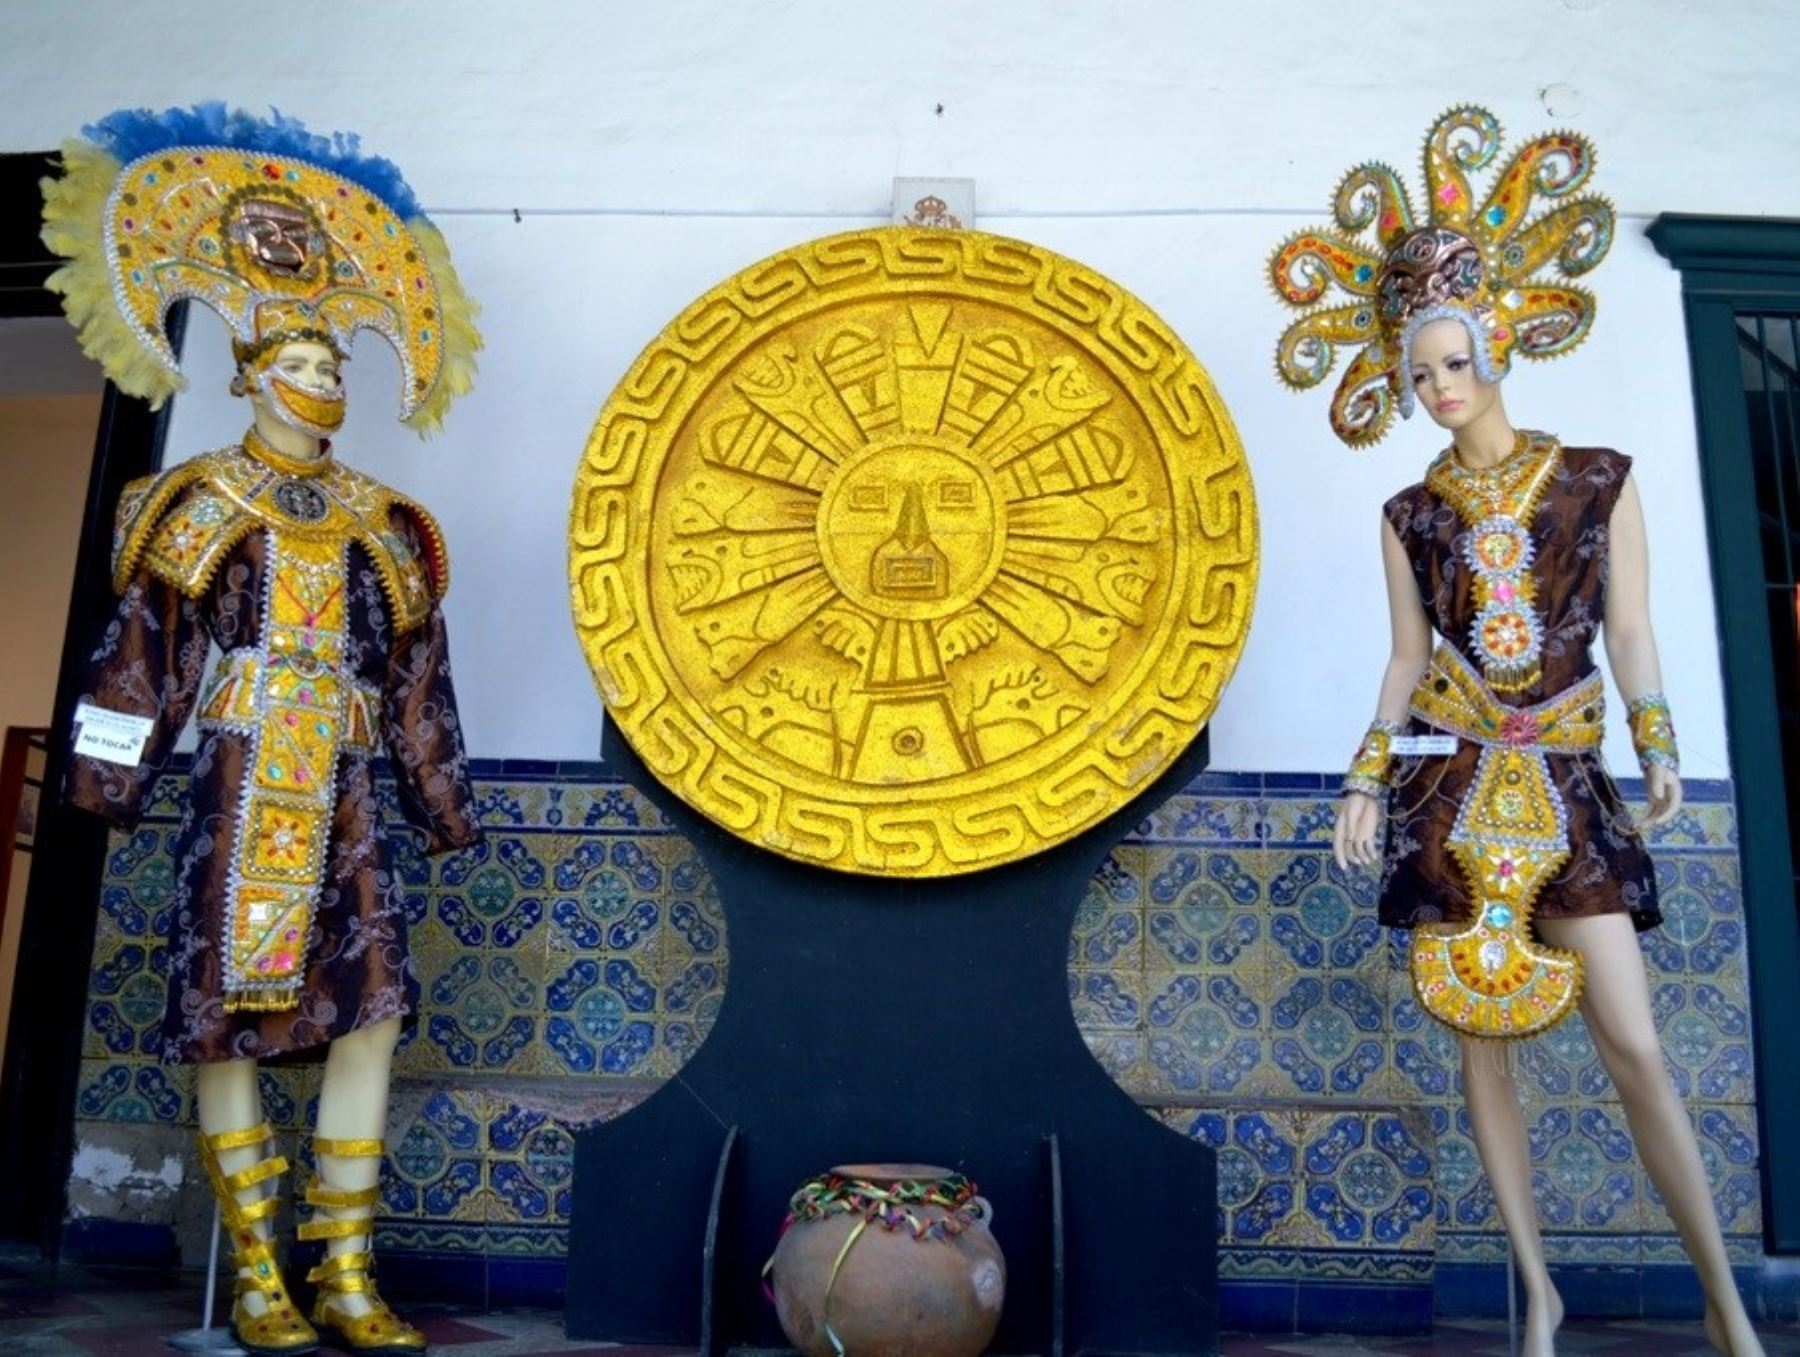 Municipalidad de Cajamarca presenta exposición de coloridos trajes de tradicional carnaval cajamarquino. ANDINA/Difusión